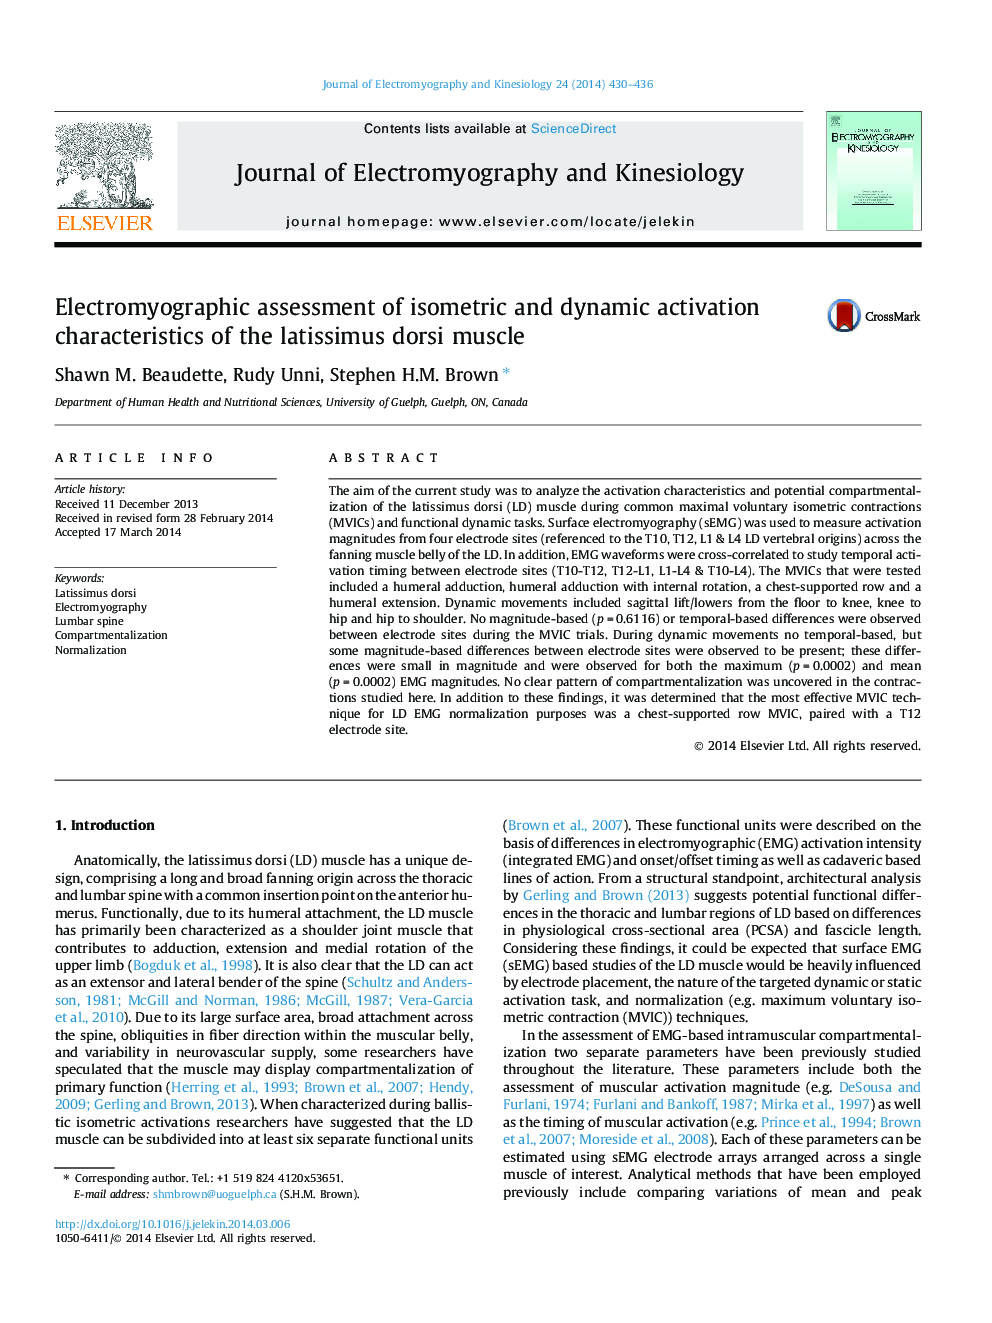 ارزیابی الکترومیوگرافی از ویژگی های فعال سازی ایزومتریک و دینامیکی عضله لاشیسیموس دوری 